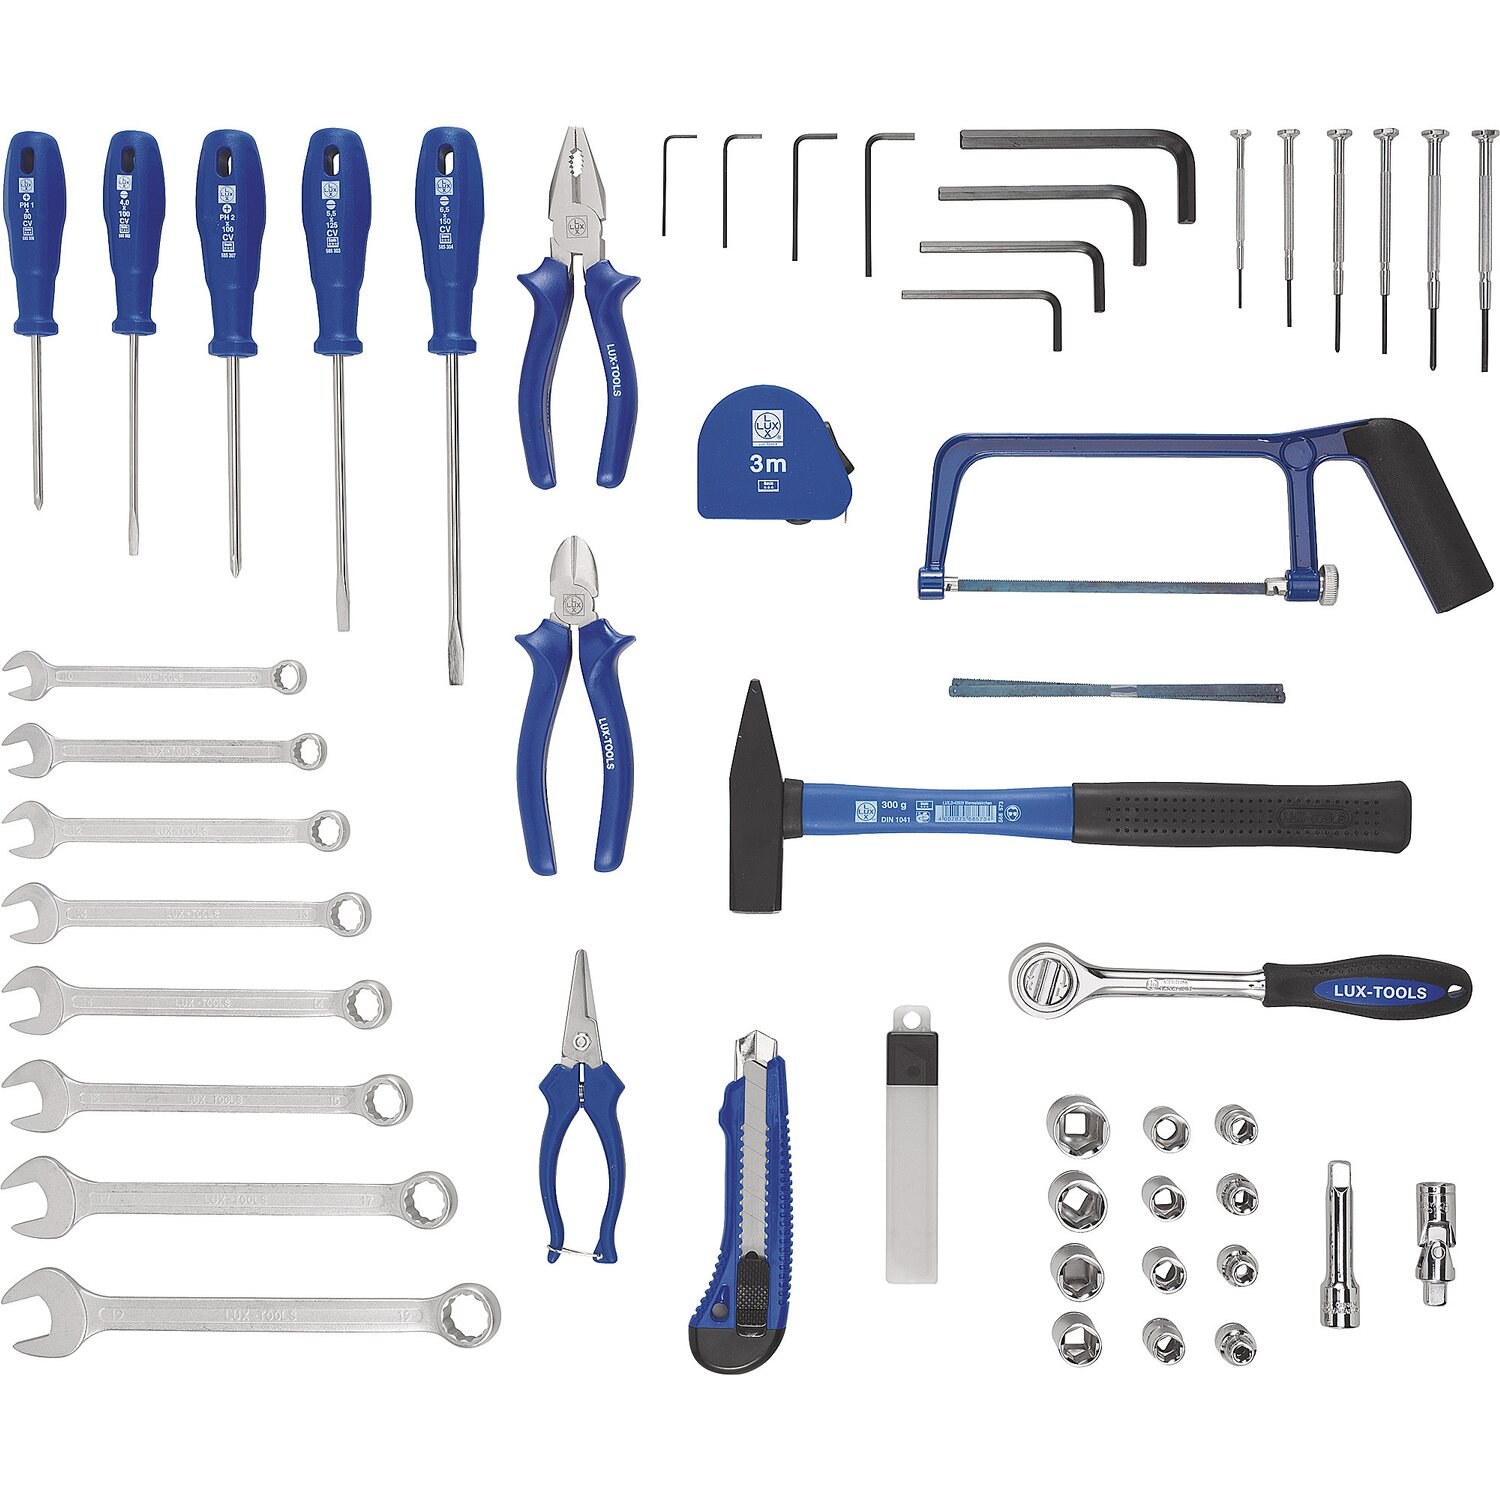 Магазин нужного инструменты. Набор Lux Tools инструментов слесарно монтажный 70 шт. Lux Tools набор инструментов синий 43. Набор инструментов Lux-Tools WZK-145 Classic. Lux Tools набор инструментов 54.